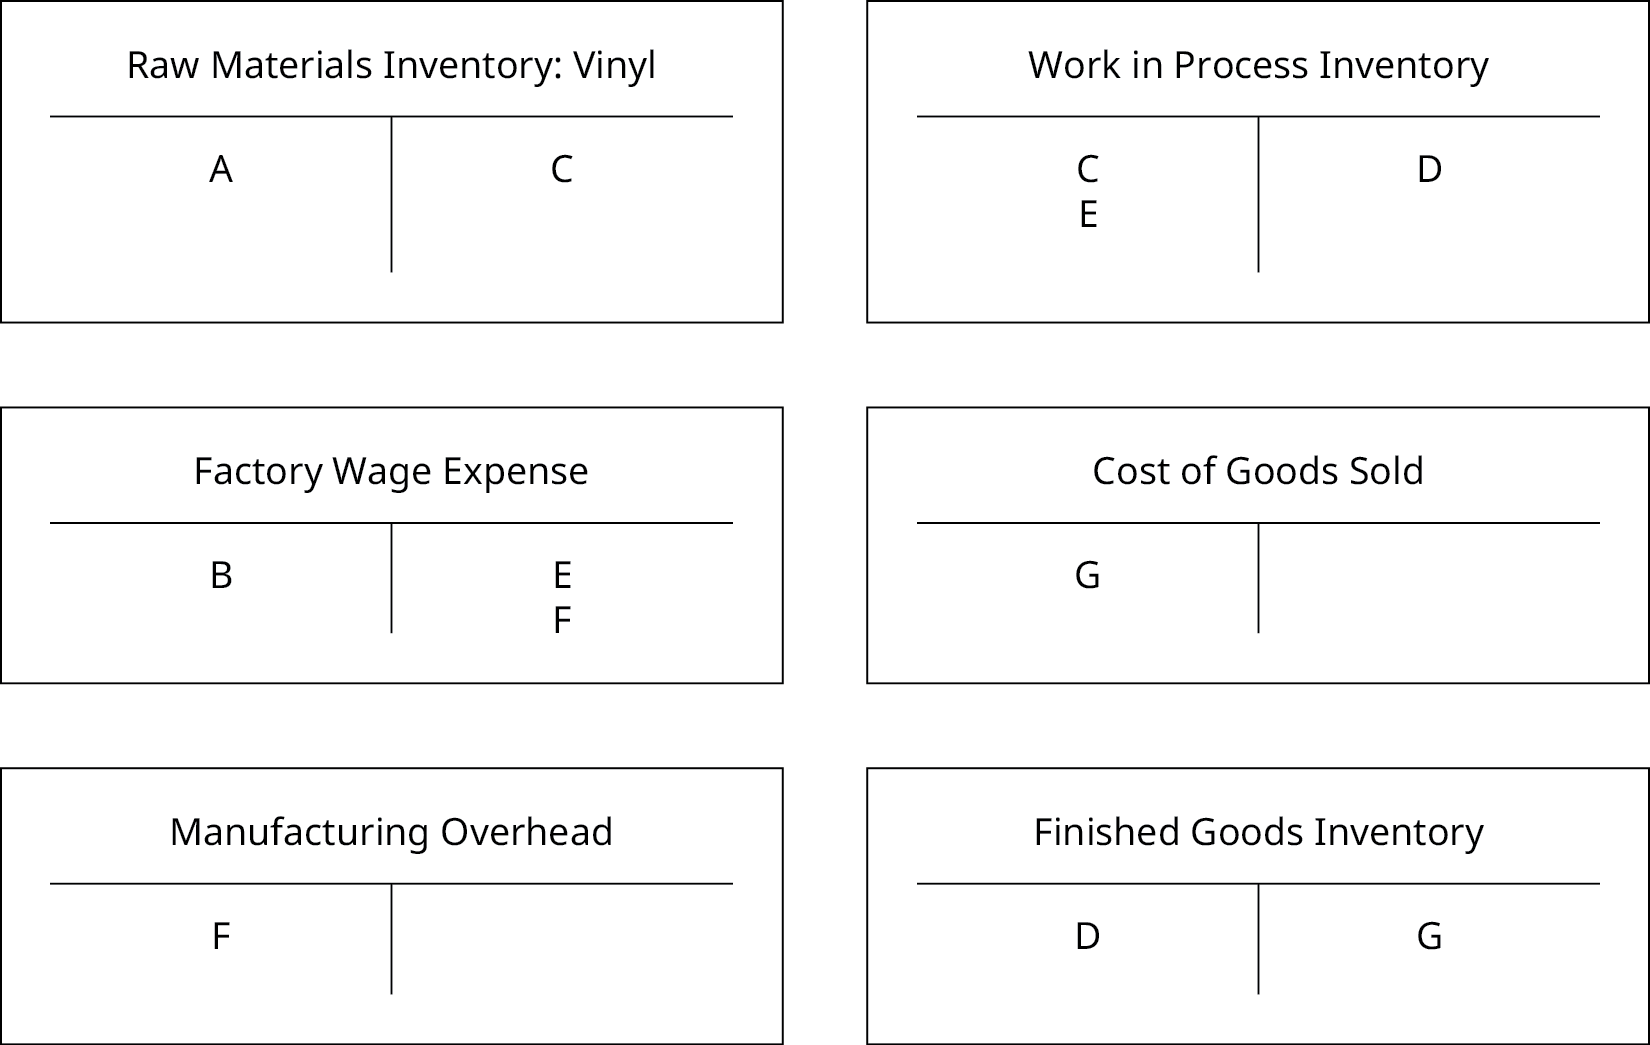 Les six comptes T : un pour « Inventaire des matières premières : vinyle », « Dépenses salariales d'usine », « Frais généraux de fabrication », « Inventaire des travaux en cours », « Coût des marchandises vendues » et « Inventaire des produits finis » sont maintenant remplis. « Inventaire des matières premières : vinyle » a un A du côté débit et un C du côté crédit, « Dépenses salariales d'usine » a un B du côté débit et un E et un F du côté du crédit, « Frais généraux de fabrication » a un F du côté débit, « Work in Process Inventory » a un C et E du côté débit et un D du côté crédit, « Coût des marchandises vendues » a un G du côté débit, et « Inventaire des produits finis » a un D au débit et un G du côté du crédit.